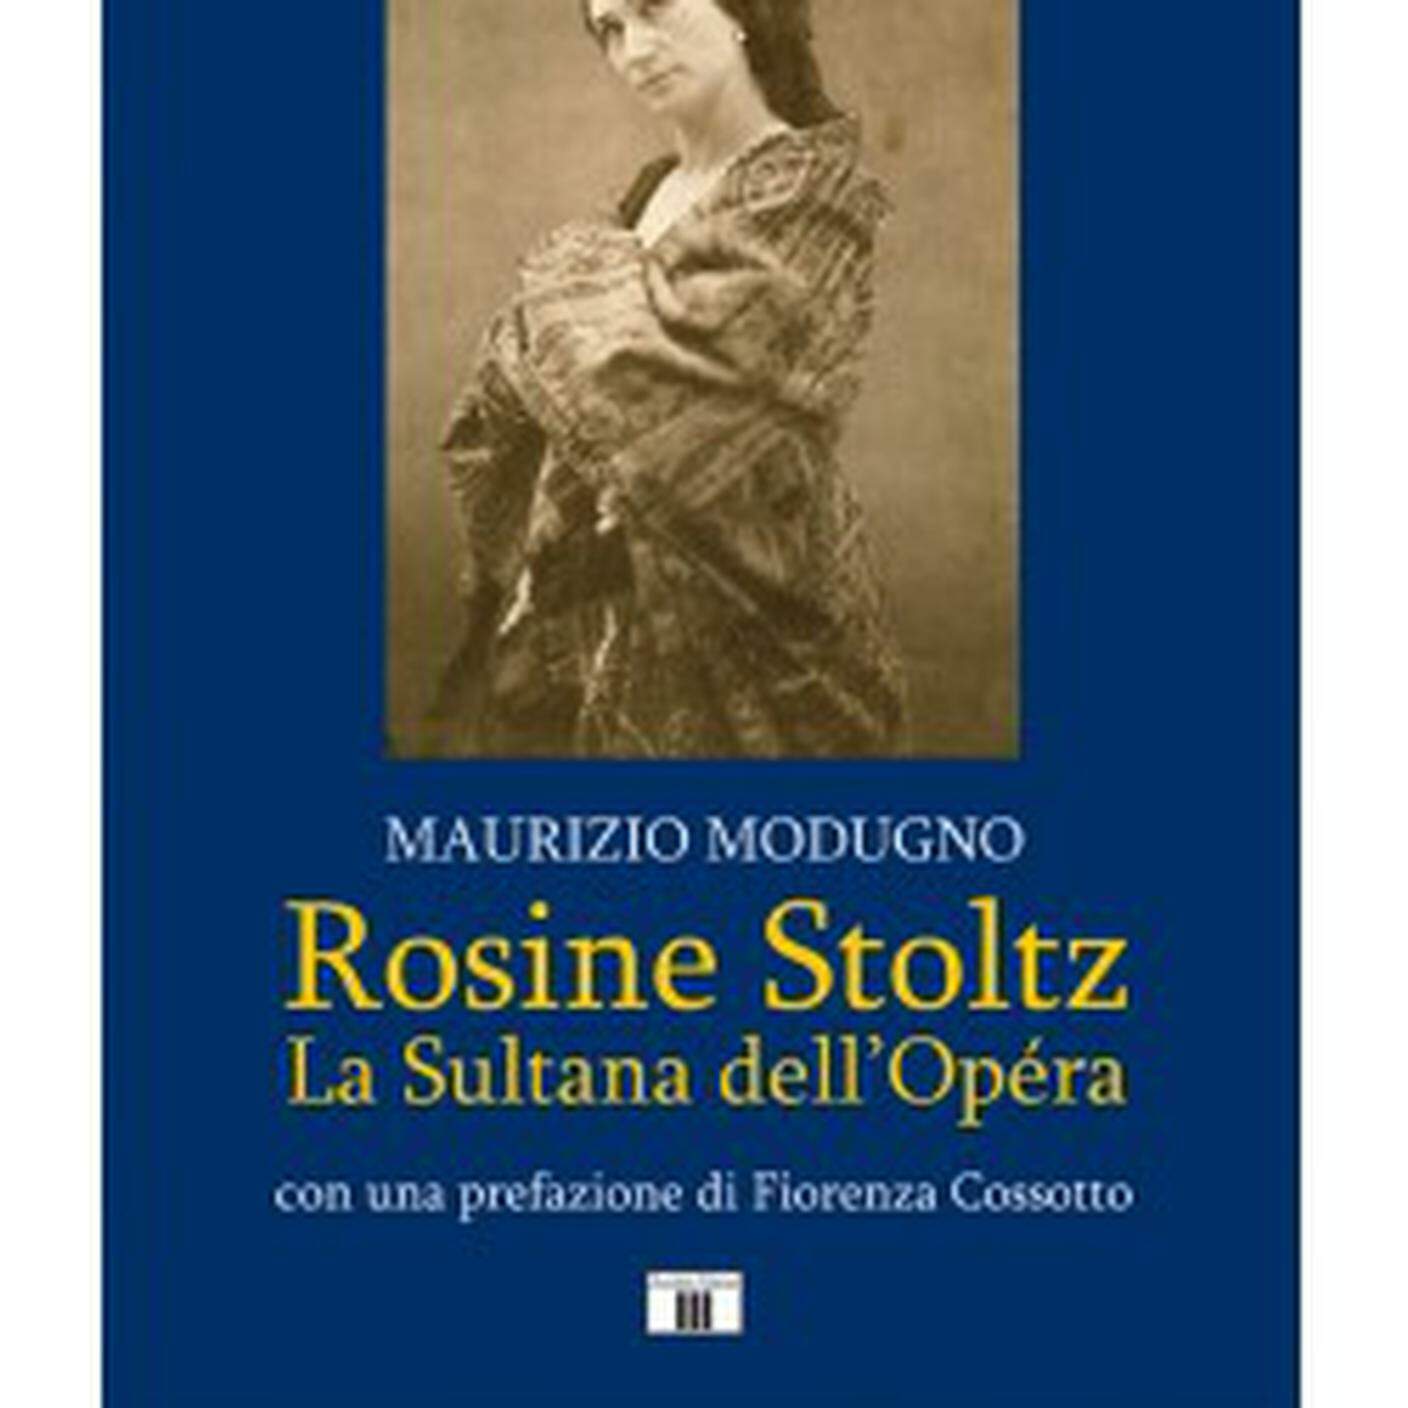 "Rosine Stoltz, la sultana dell’Opéra" di Maurizio Modugno, Zecchini Editore (dettaglio di copertina)